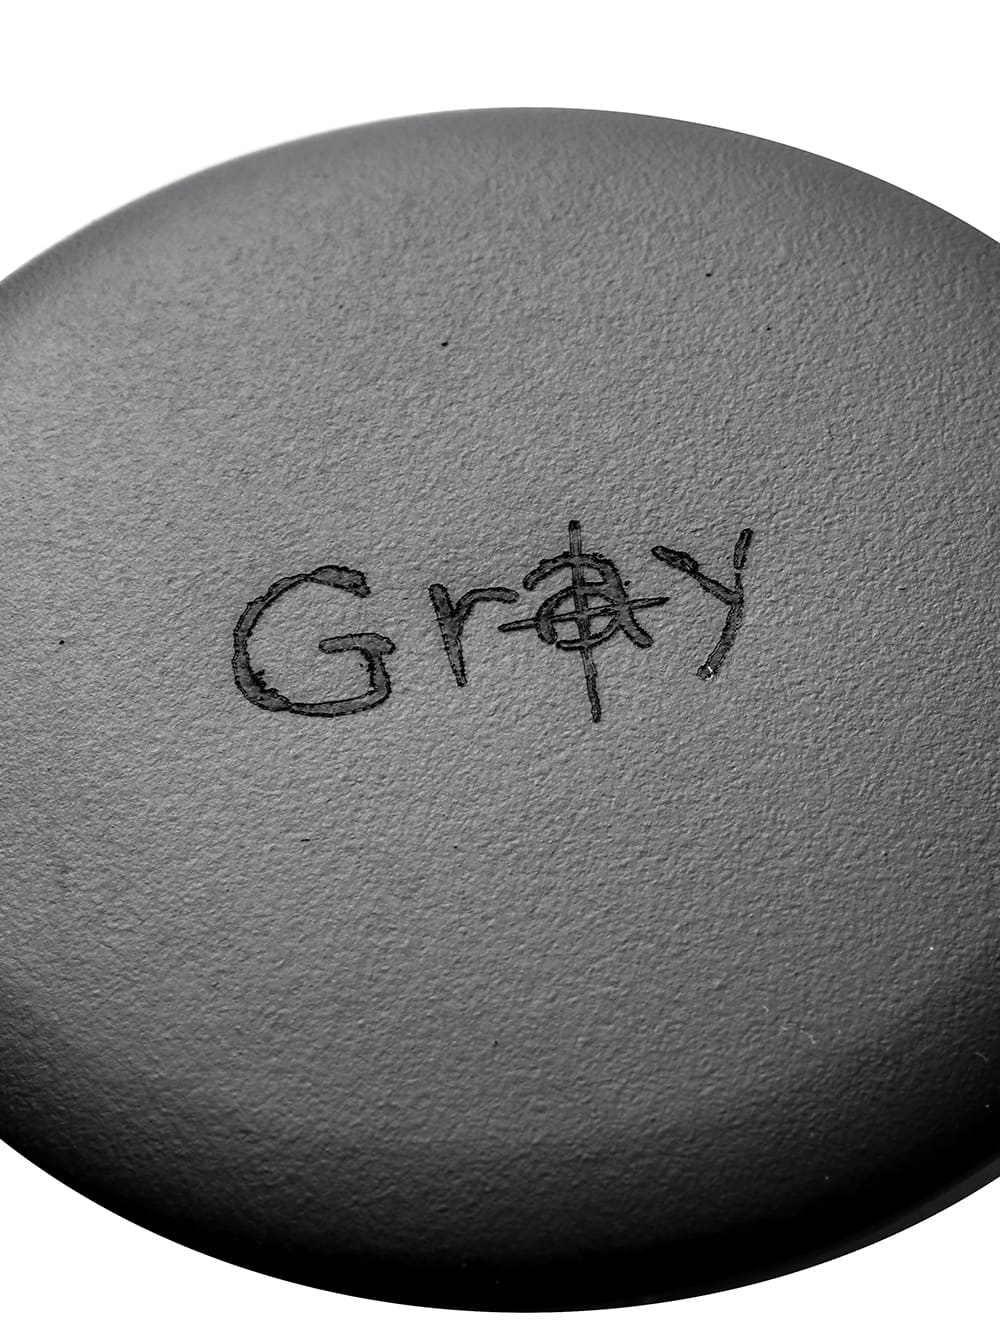 "gray" プレーンメタルバッジ(ミディアム)